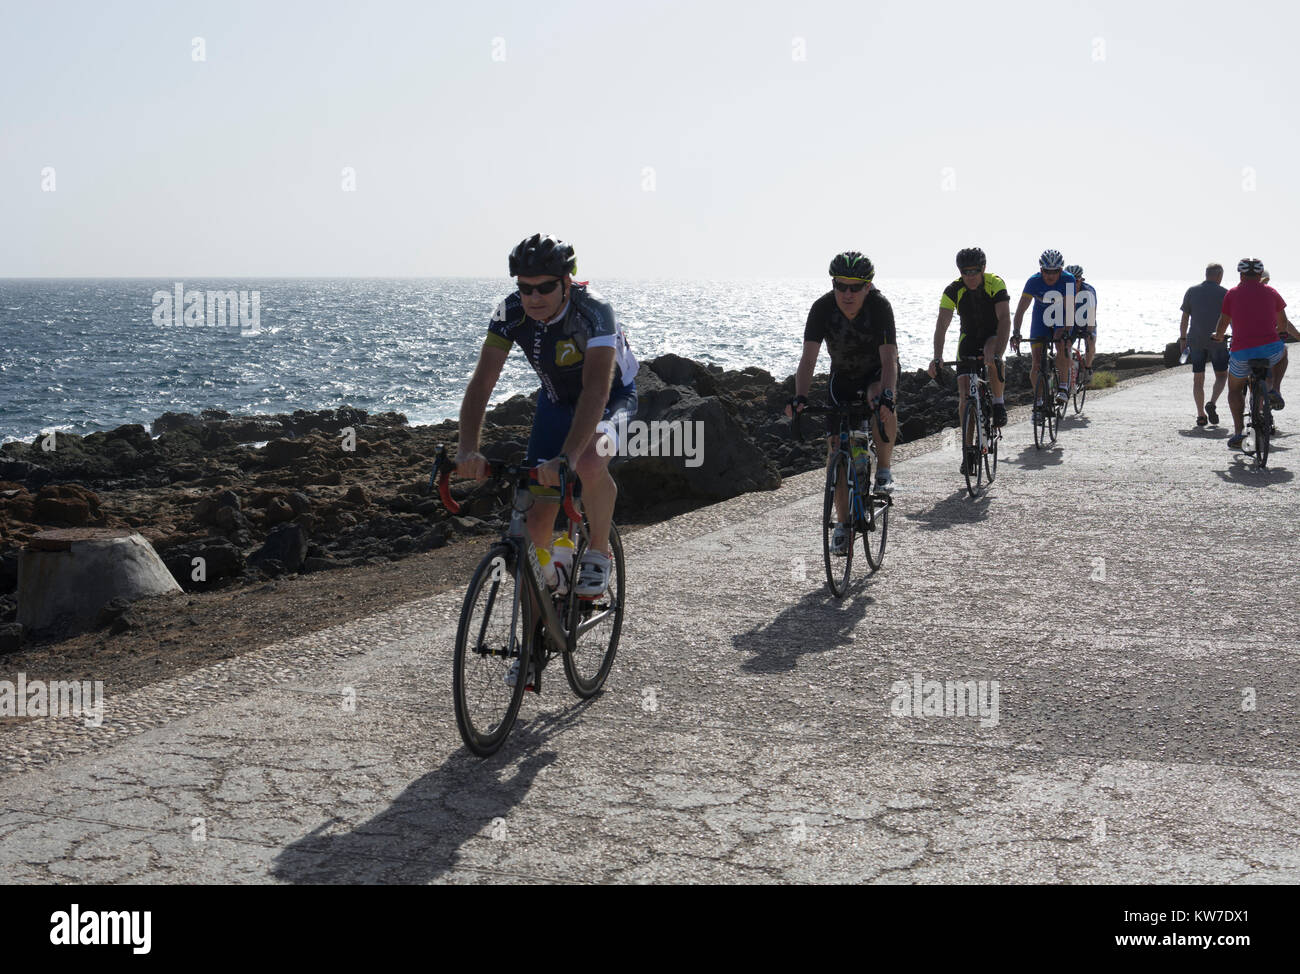 Les cyclistes sur le front de mer à Costa Teguise, Lanzarote, îles Canaries, Espagne. Banque D'Images